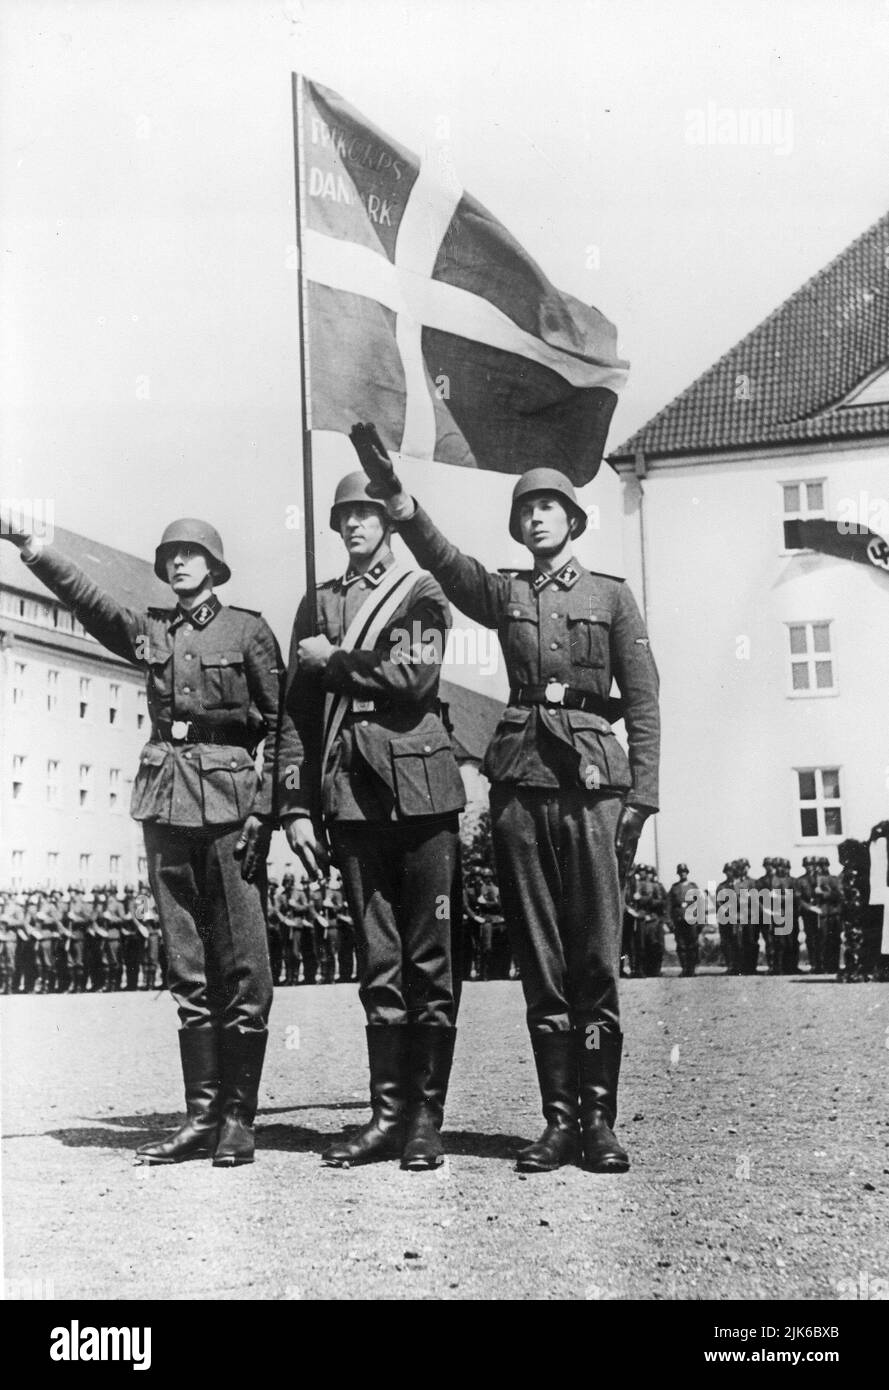 Die Nazi-deutschen Elitetruppen die Waffen-SS hatte viele Abteilungen ausländischer Freiwilliger, die an den nationalsozialismus glaubten. Hier sind Mitglieder des Freien Korps Dänemark, die einen Eid ablegen, Juli 1941 Stockfoto